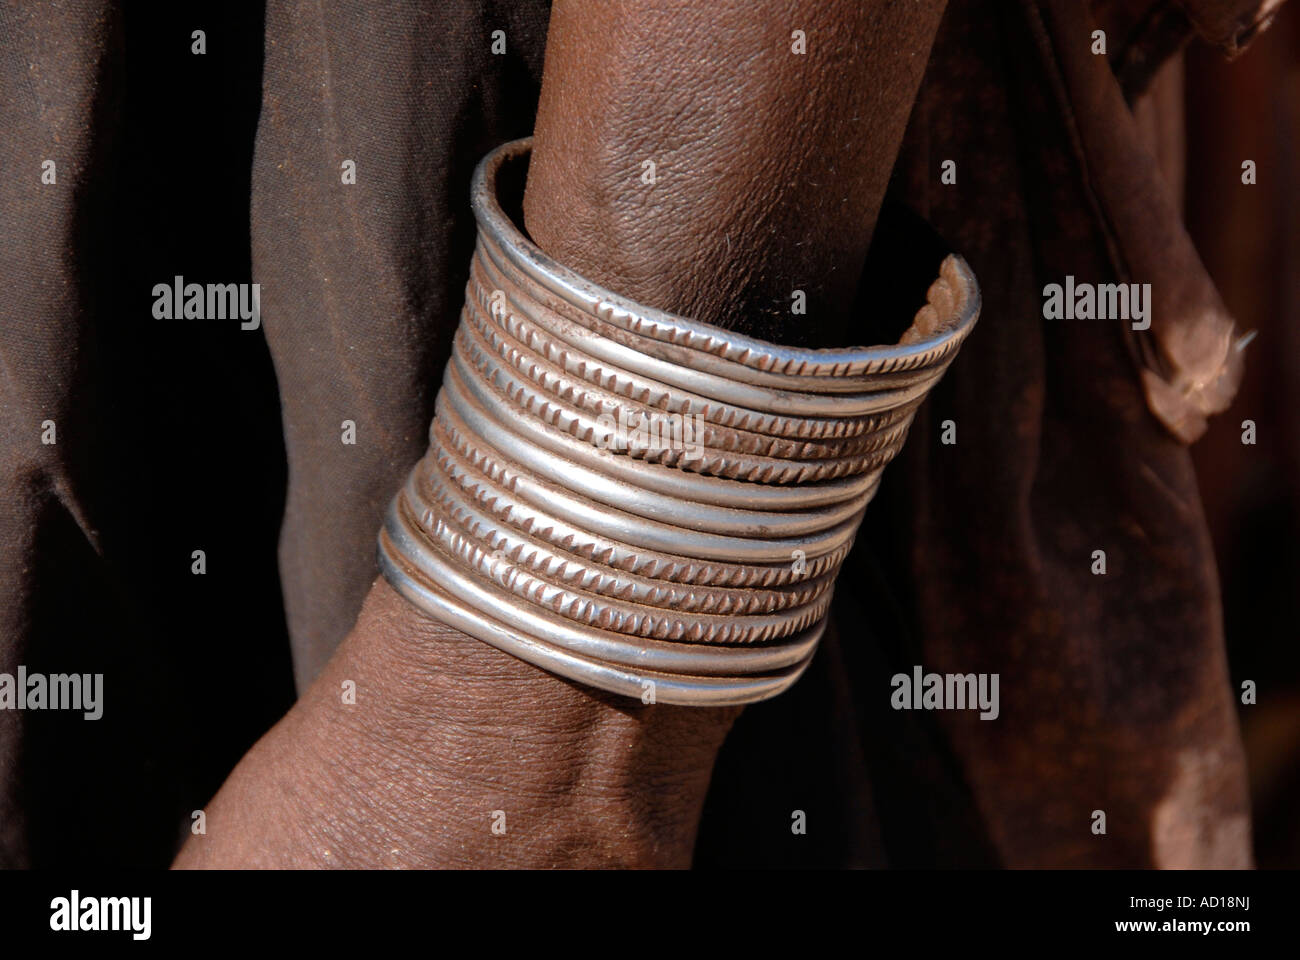 Bracelet de bras Himba Namibie Afrique Australe Kaokoveld Banque D'Images